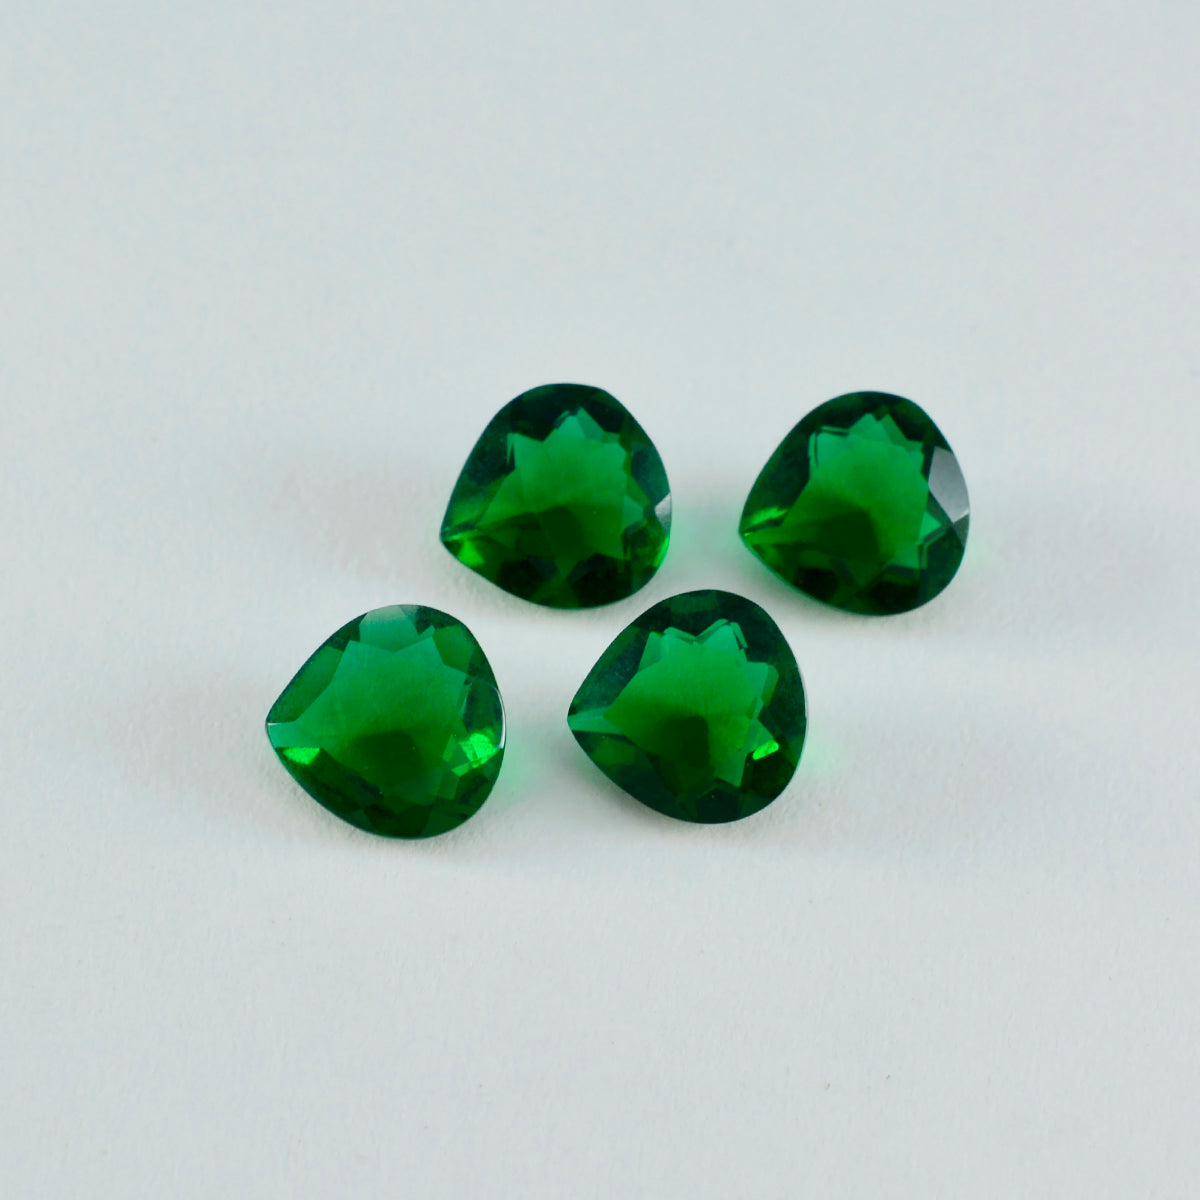 riyogems 1pc グリーン エメラルド CZ ファセット 6x6 mm ハート形状の驚くべき品質の宝石